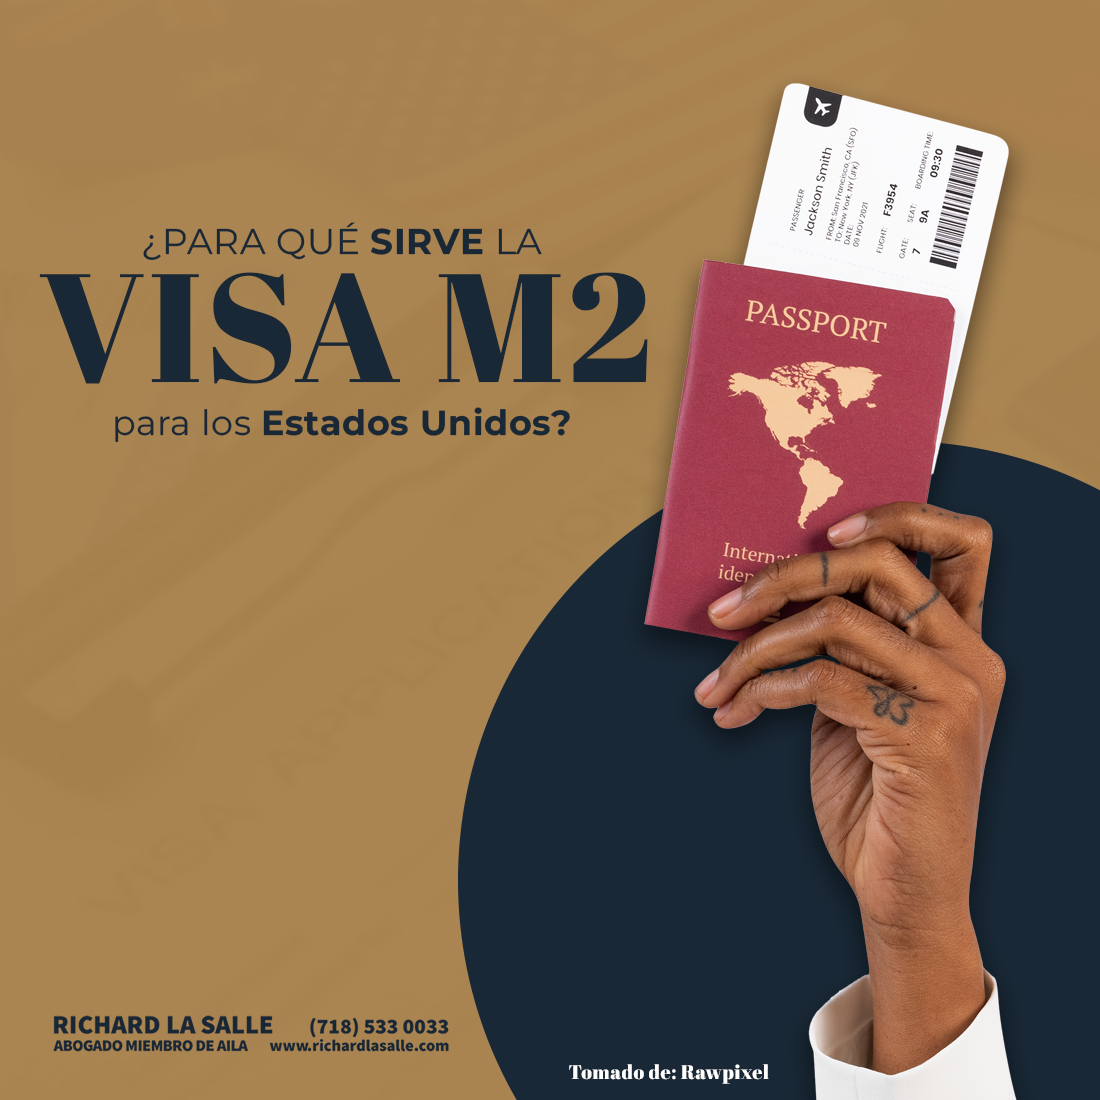 ¿Para qué sirve la Visa M2 para los Estados Unidos?